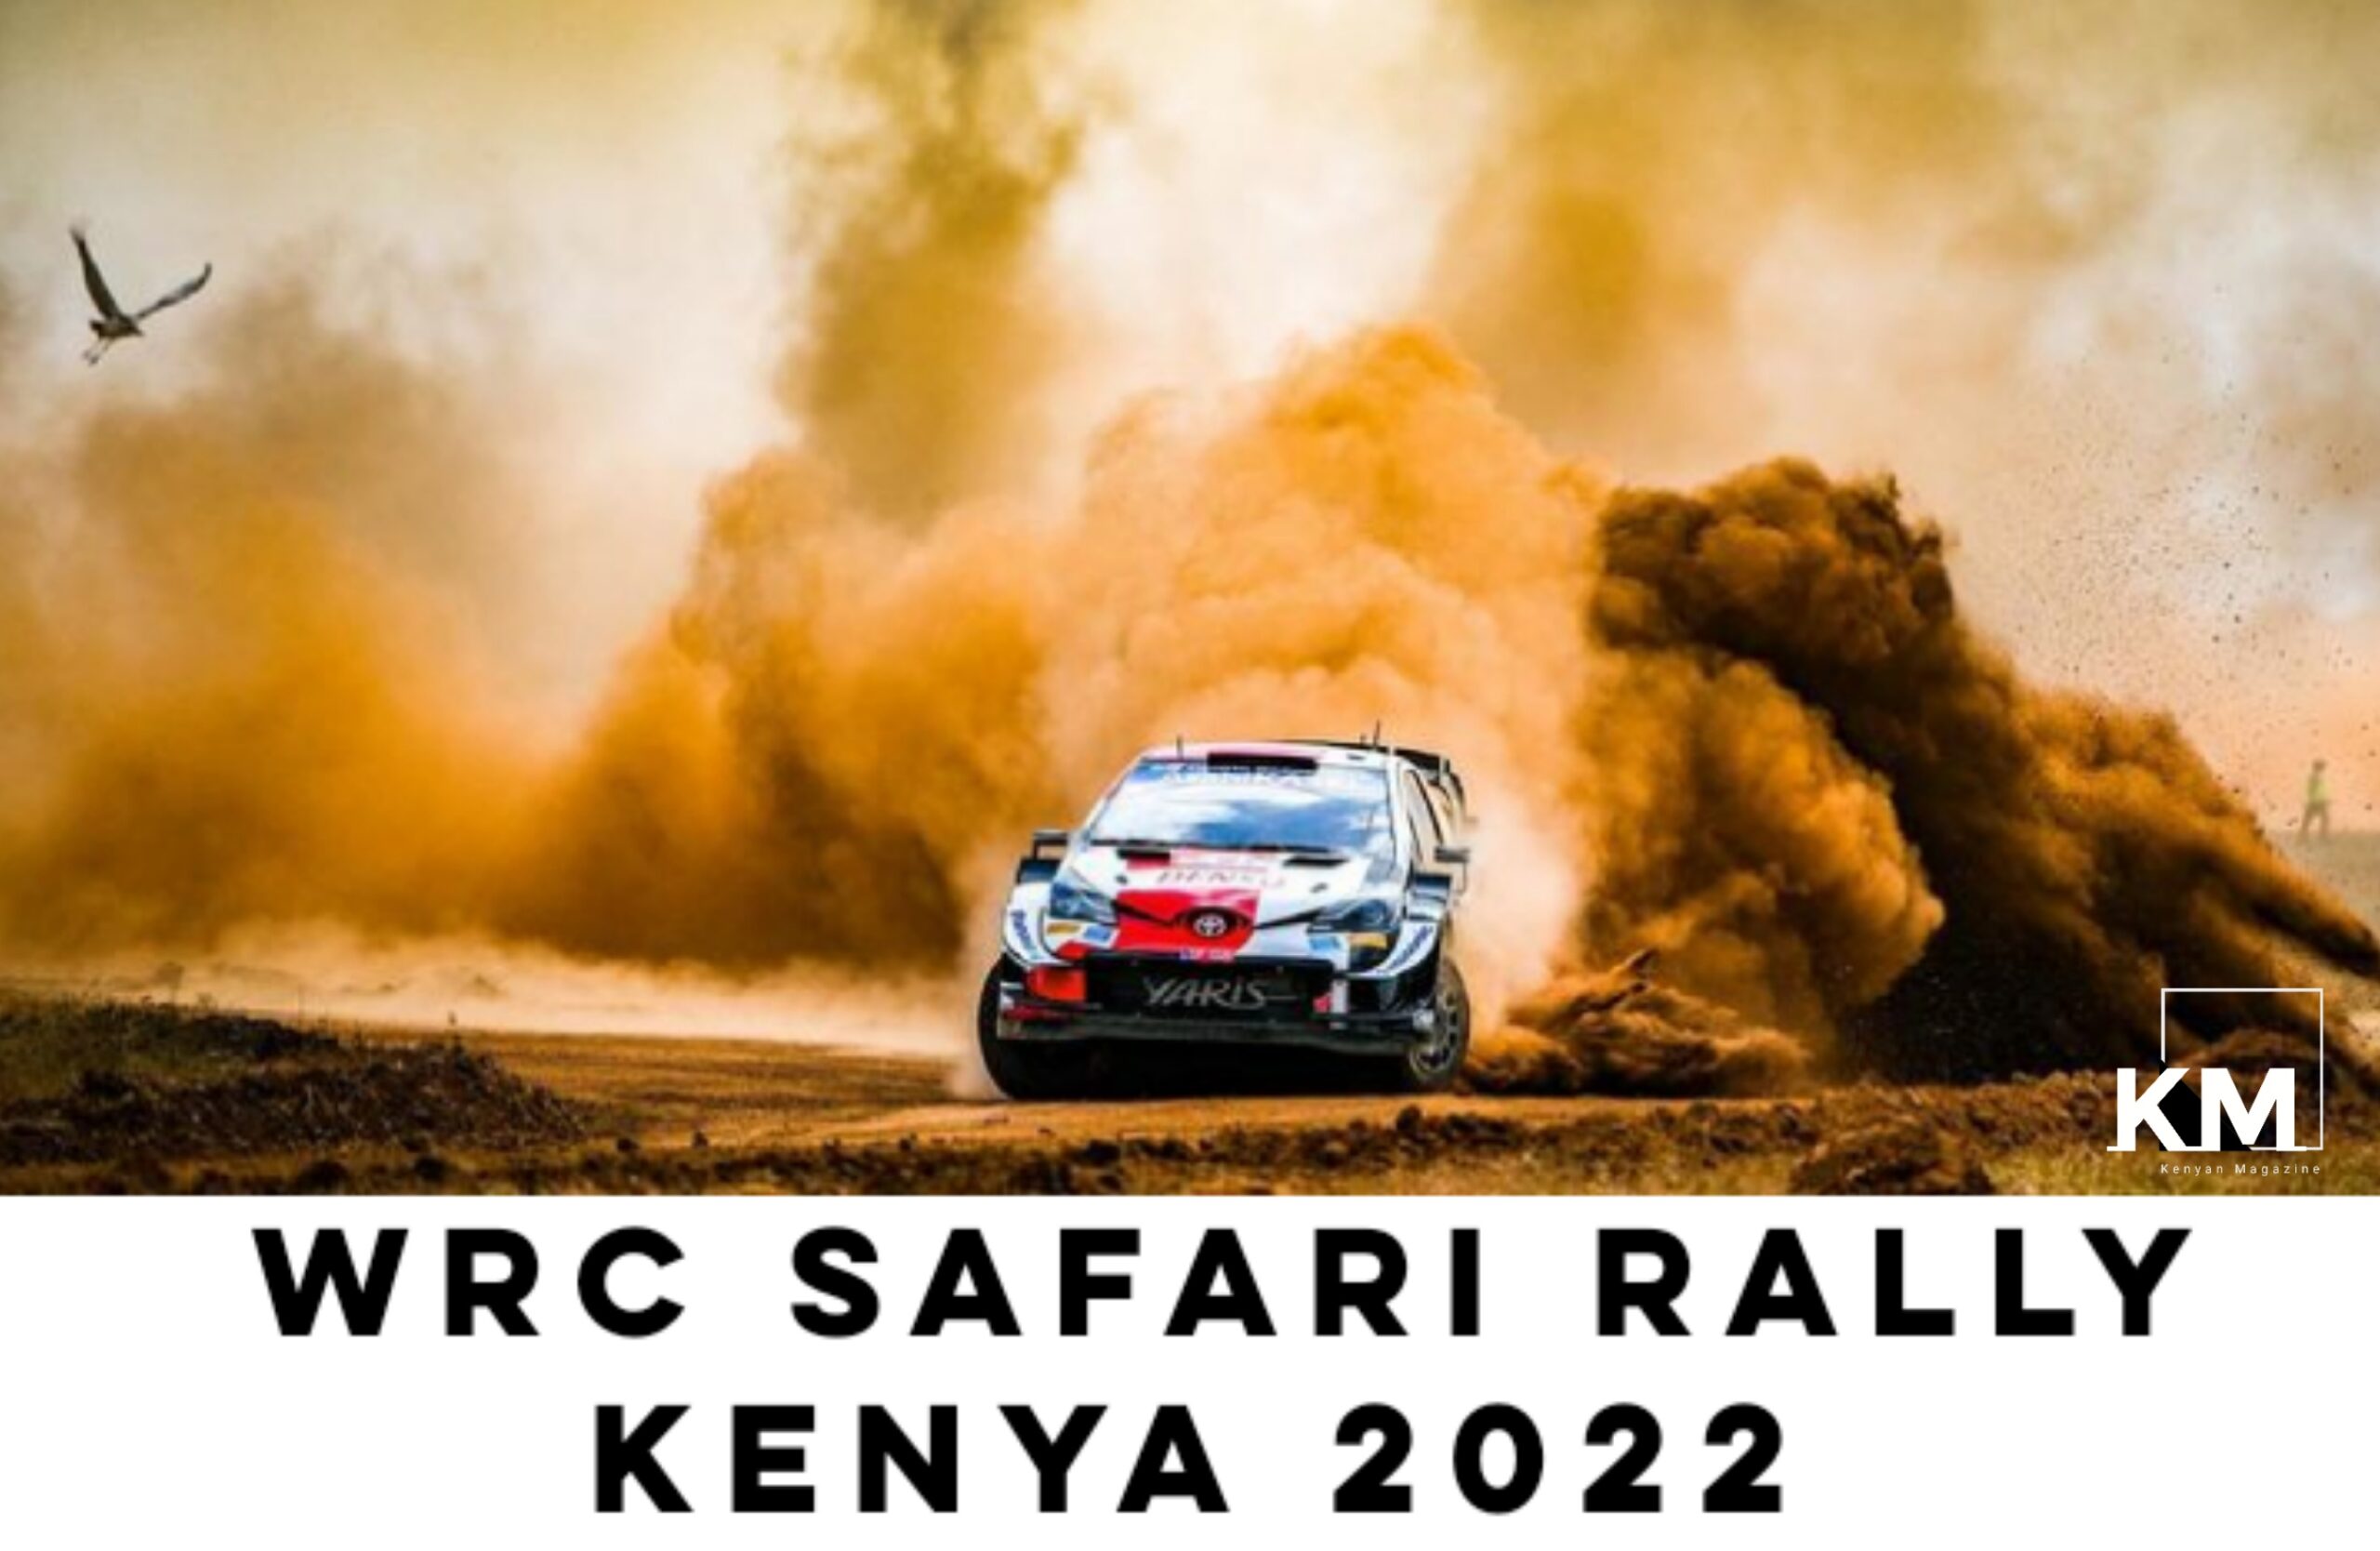 wrc safari rally 2022